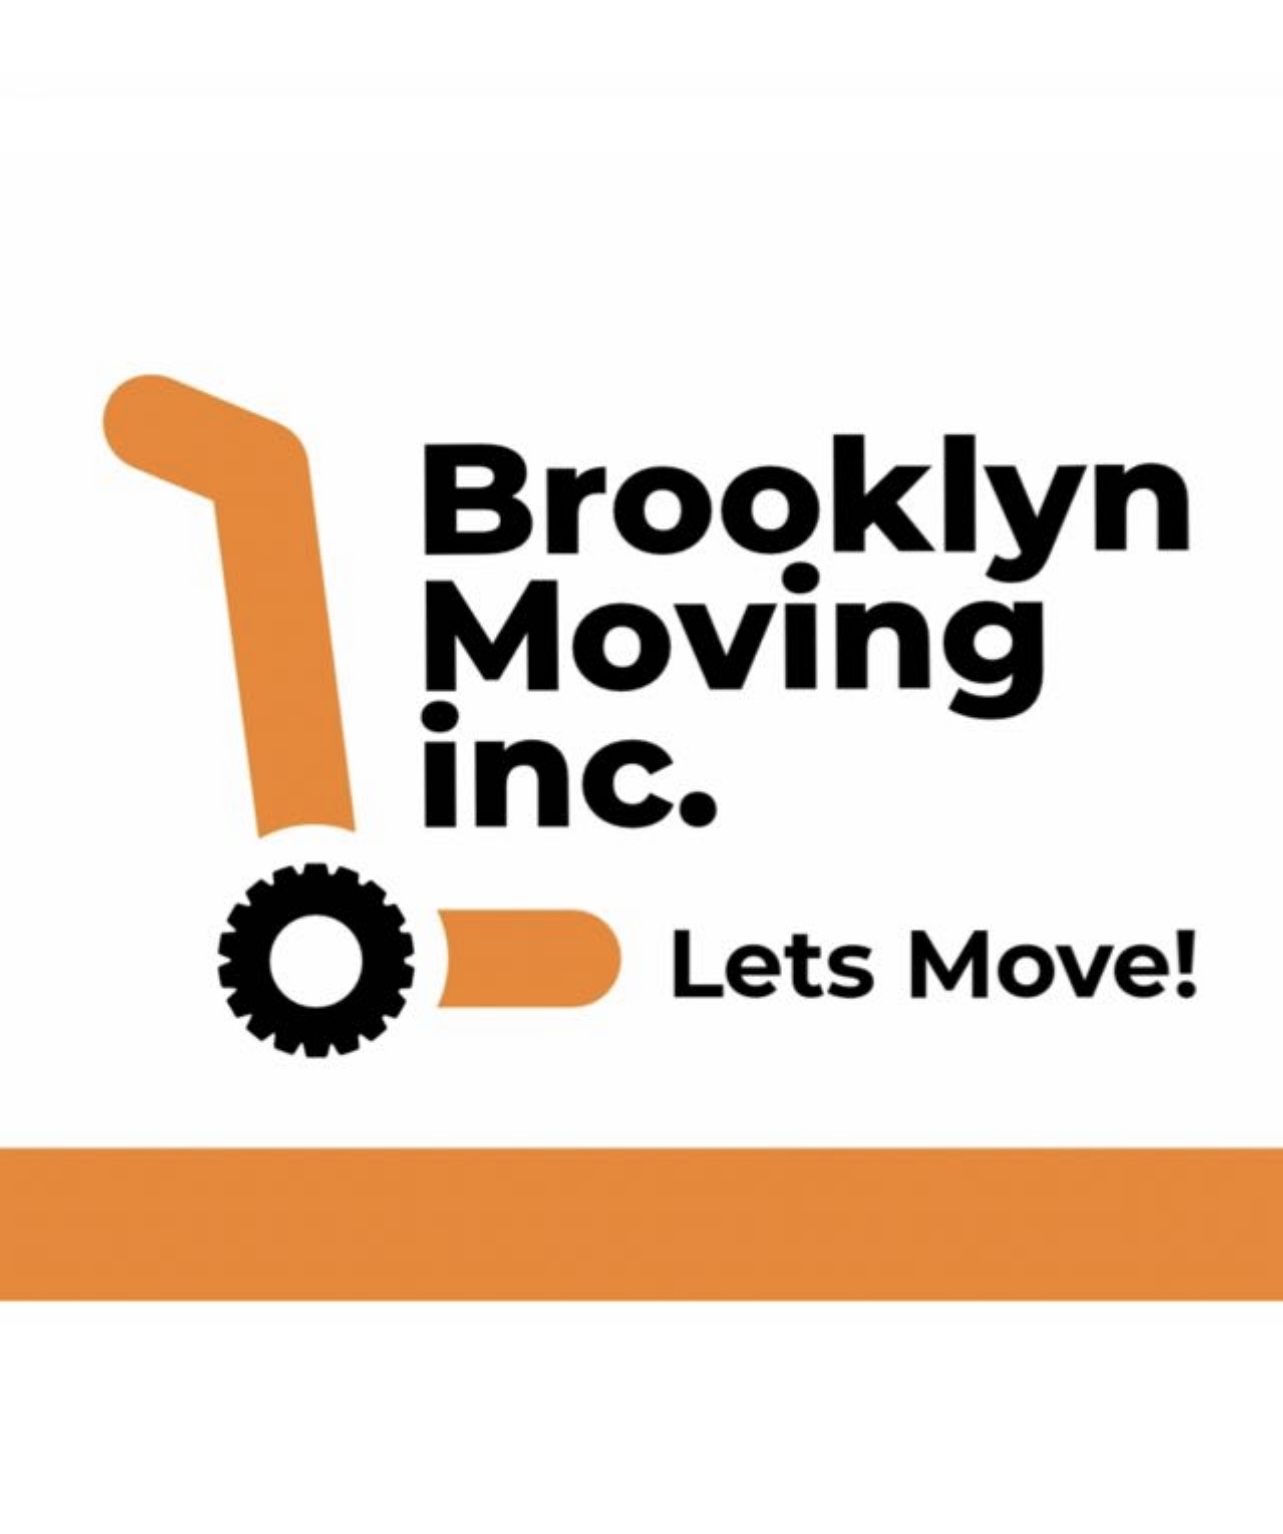 Brooklyn Moving Inc